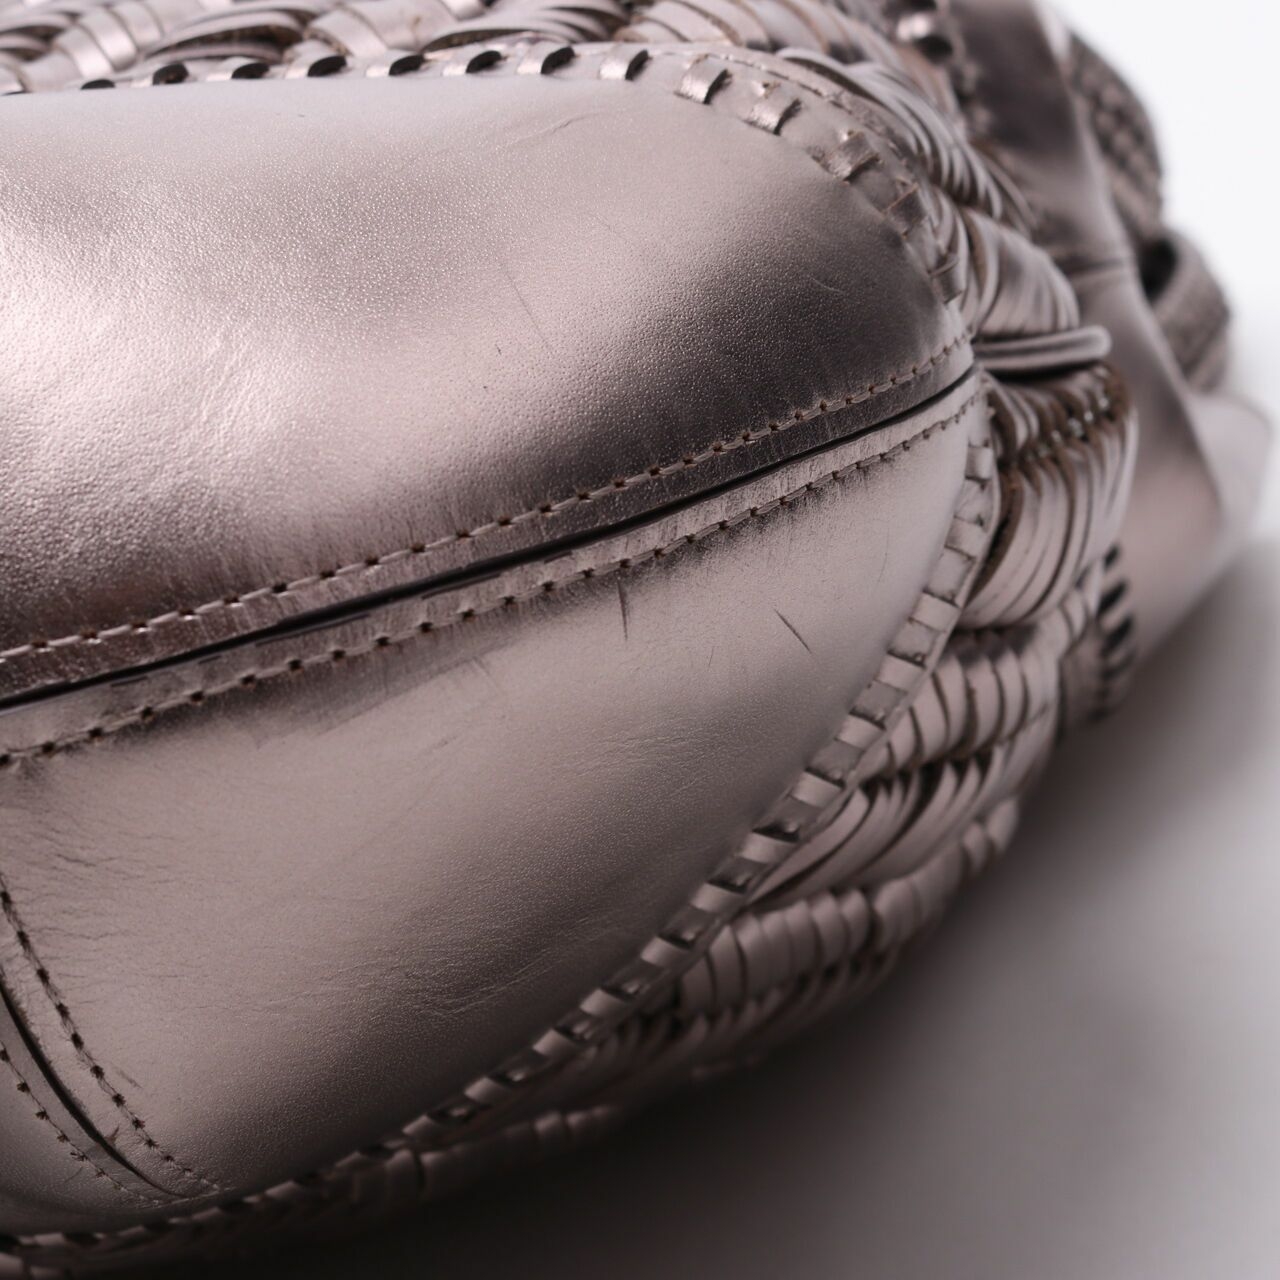 Anya Hindmarch Silver Handbag